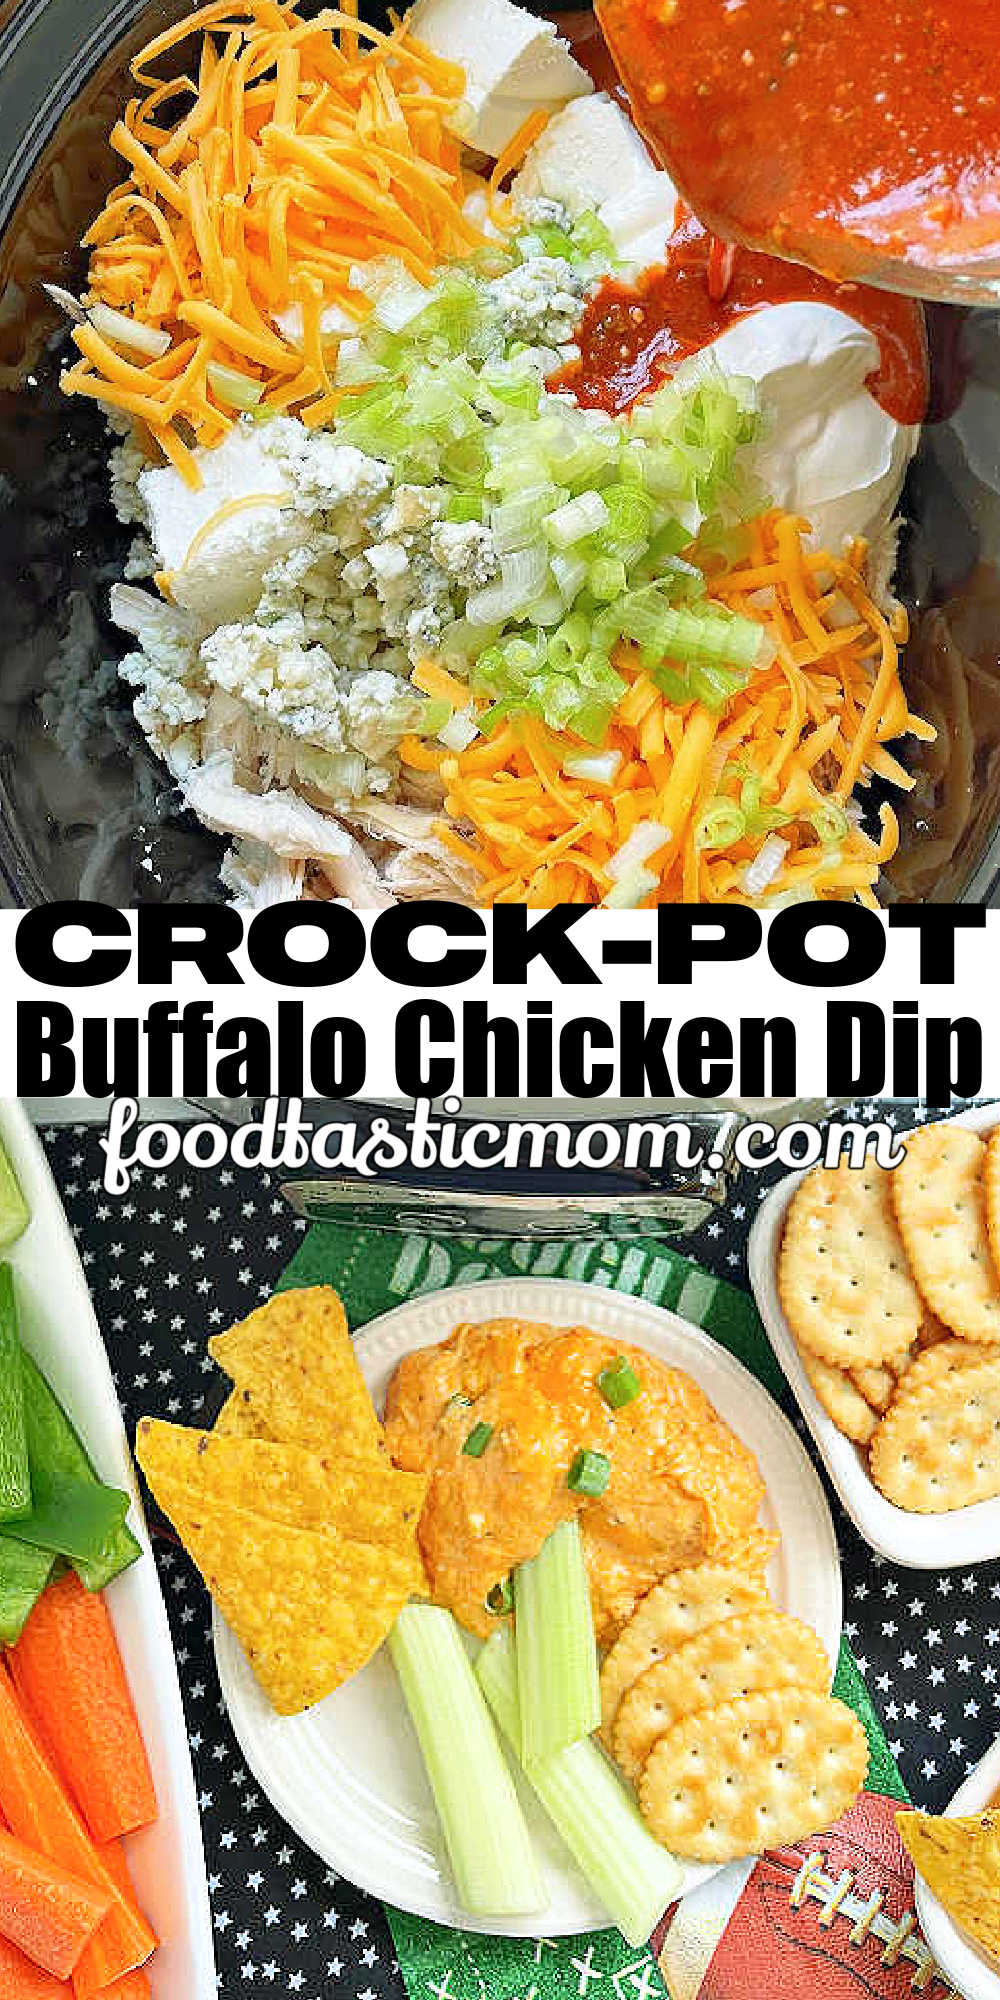 Crock Pot Buffalo Chicken Dip | Foodtastic Mom #crockpotrecipes #buffalochickendip #gameday via @foodtasticmom